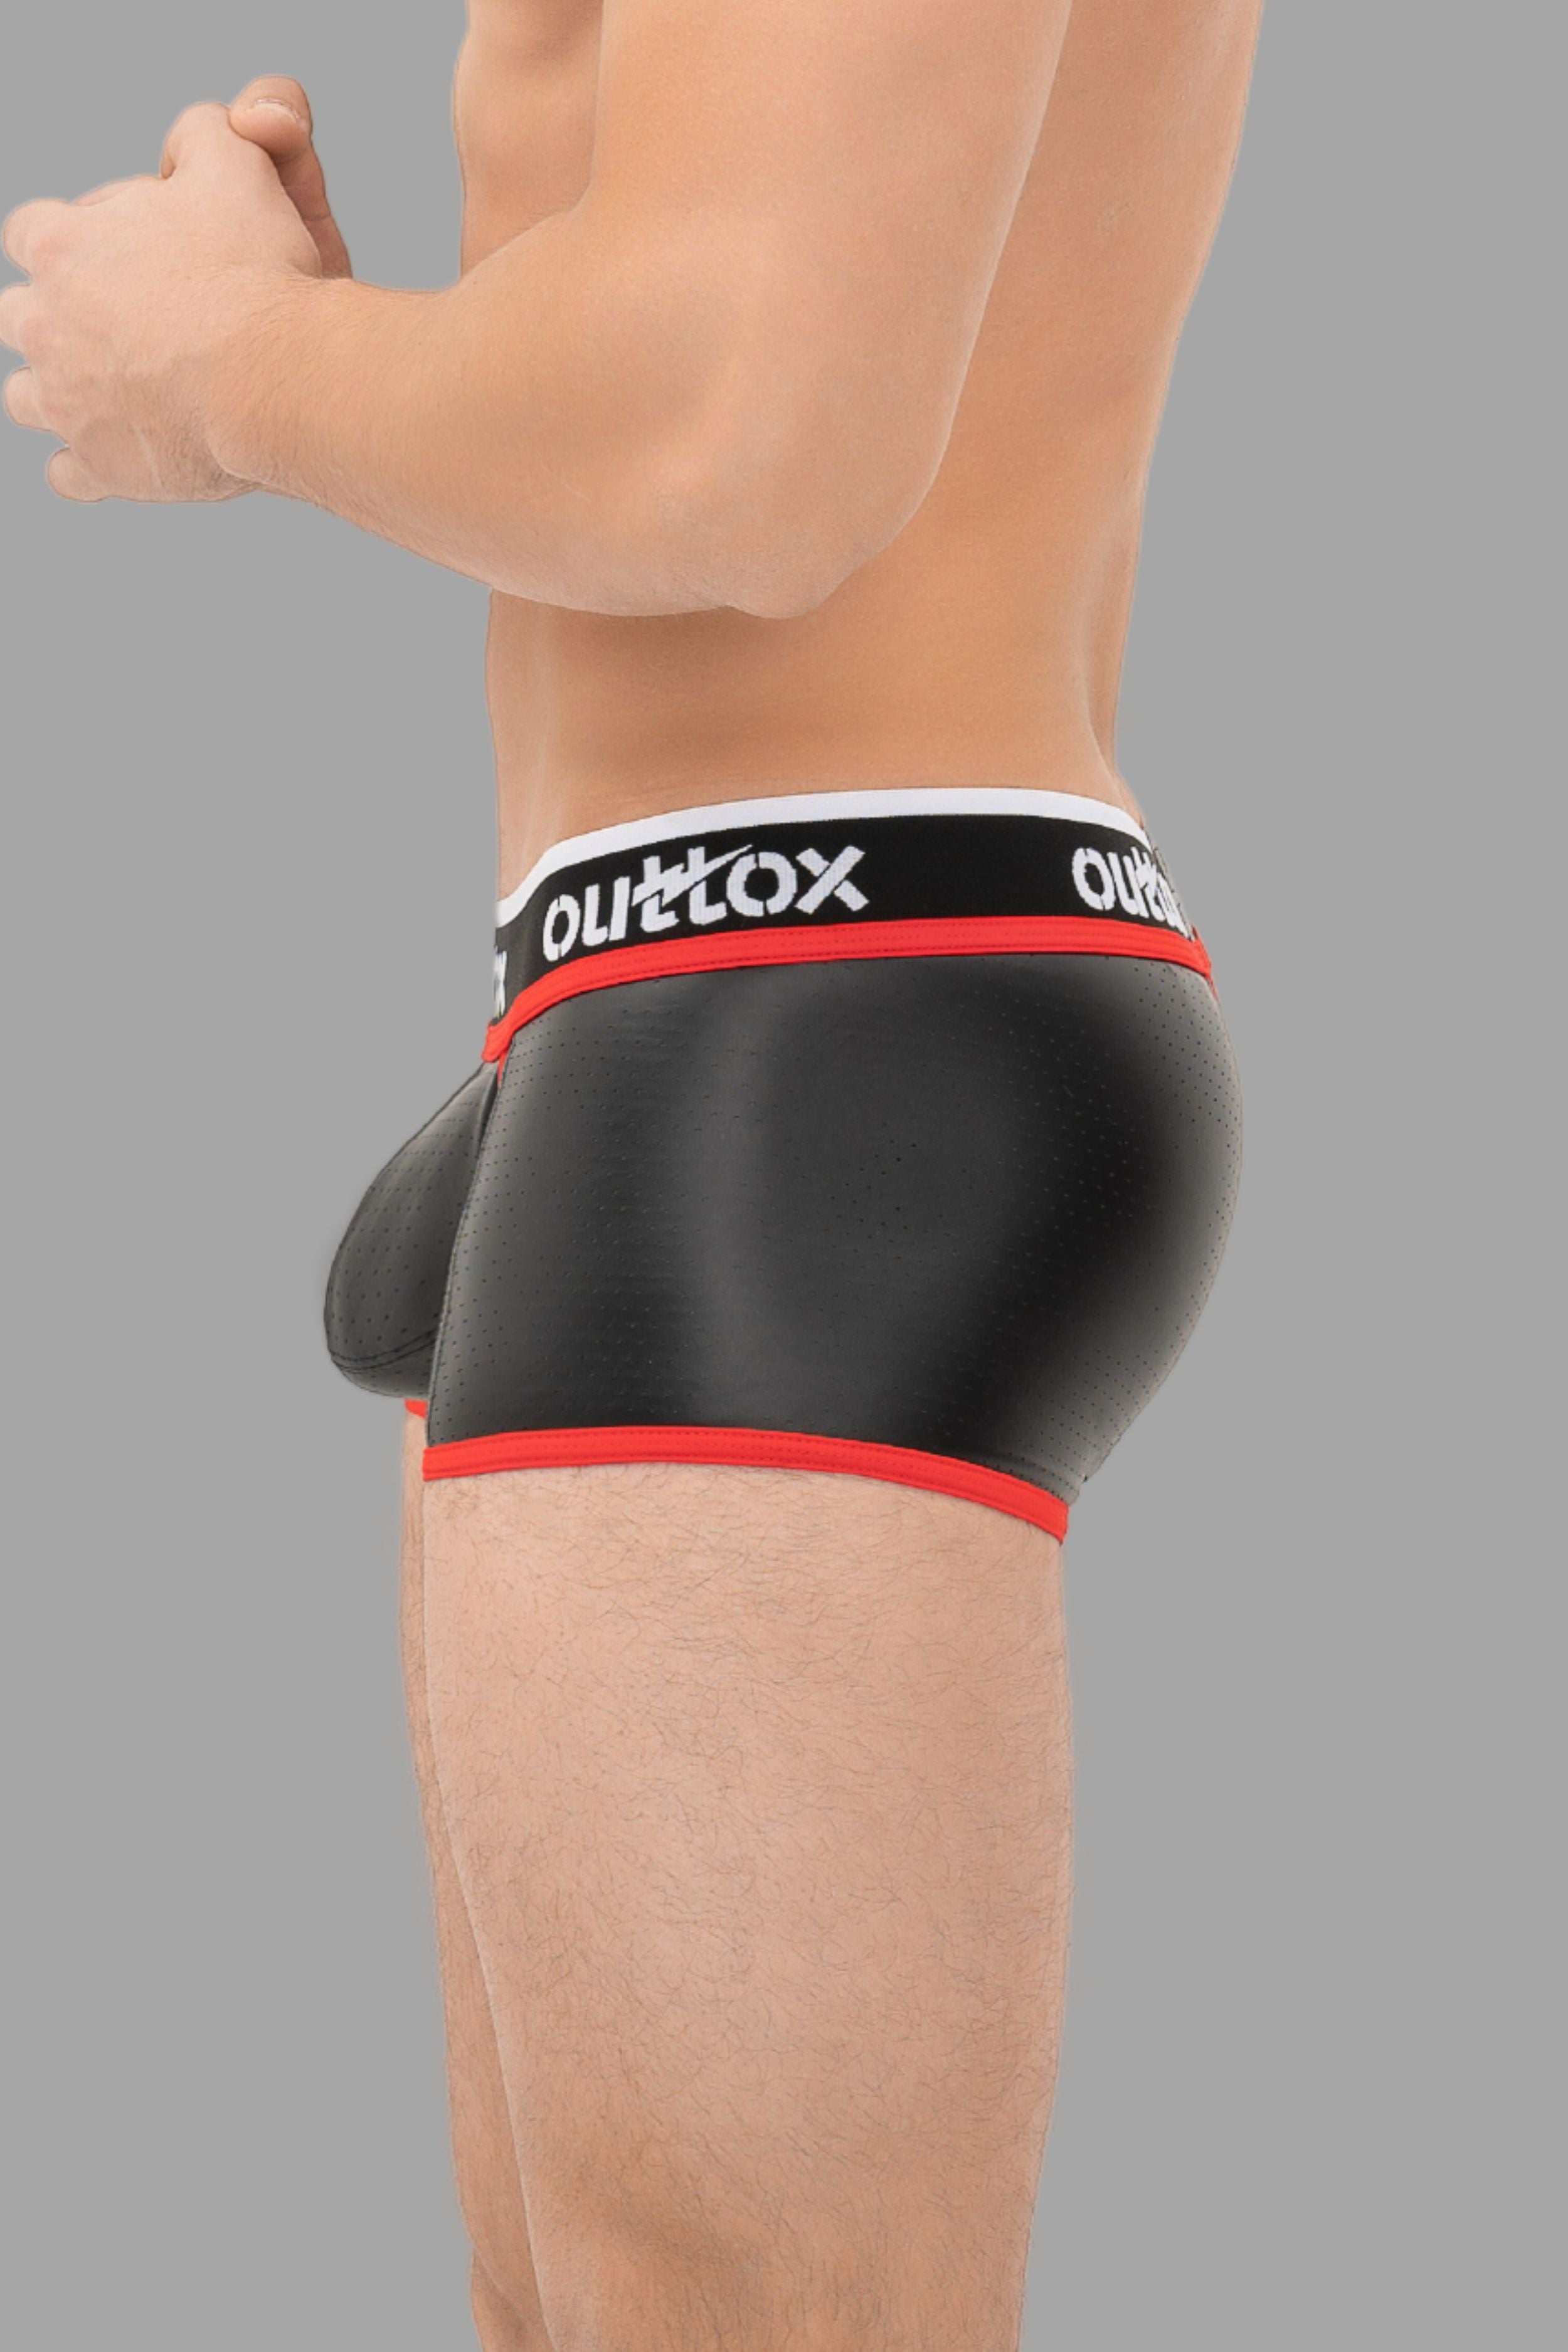 Outtox. Pantalones cortos traseros envueltos con bragueta a presión. Negro+rojo